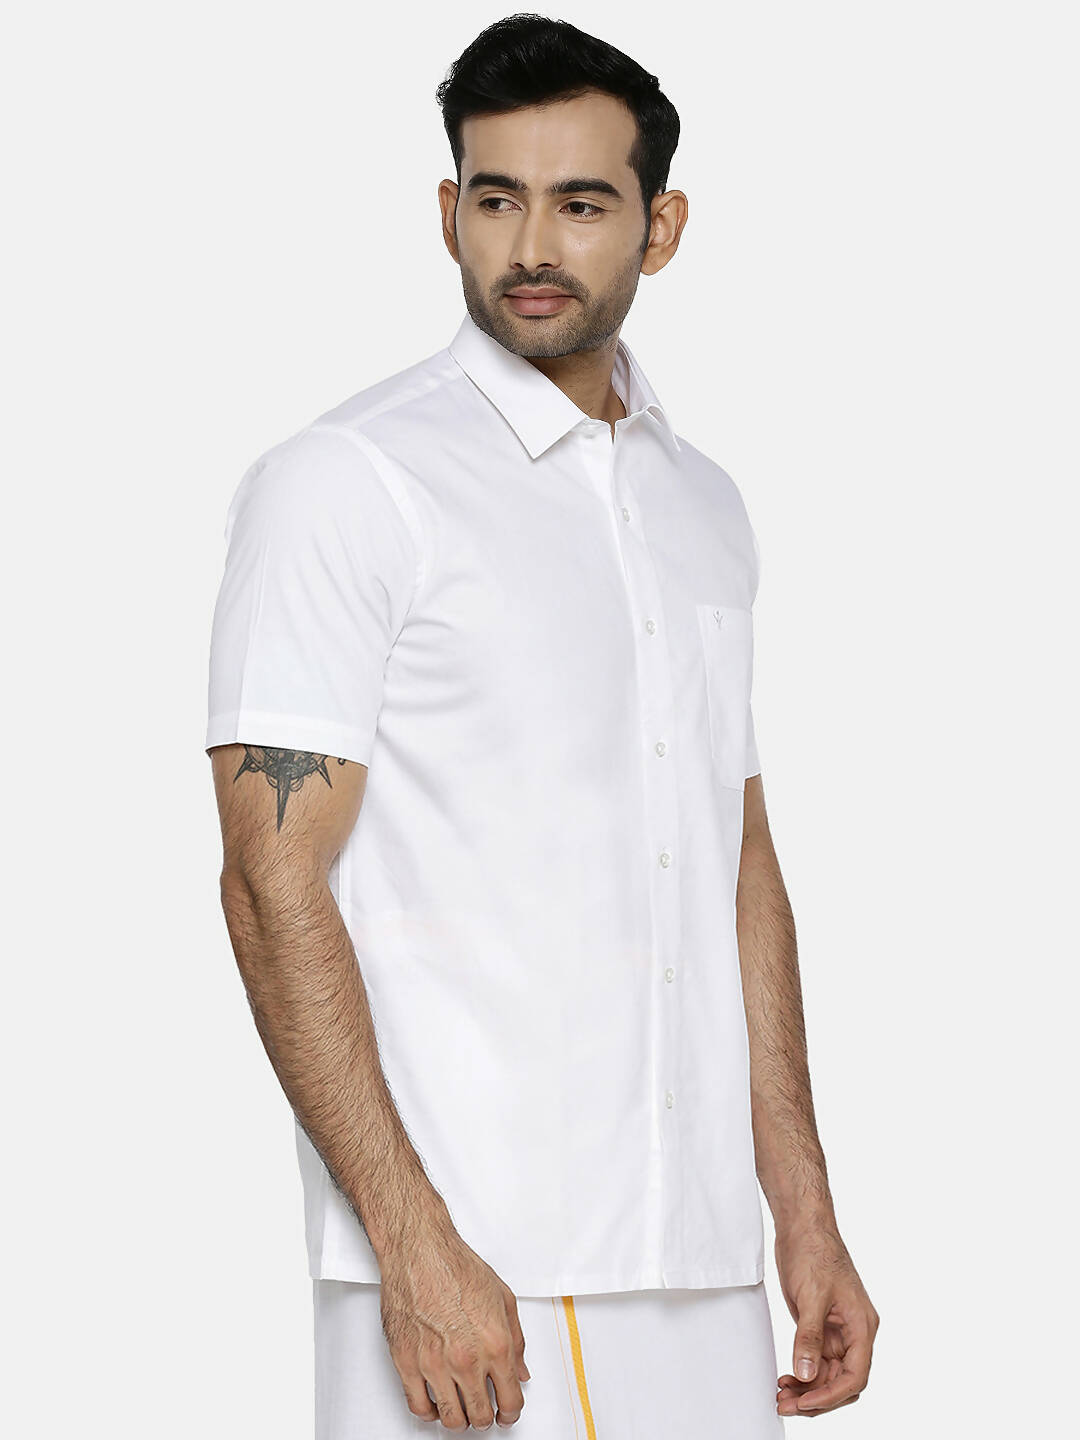 Buy Ramraj Cotton Mens Half Sleeve Formal 100 % Cotton White Shirt